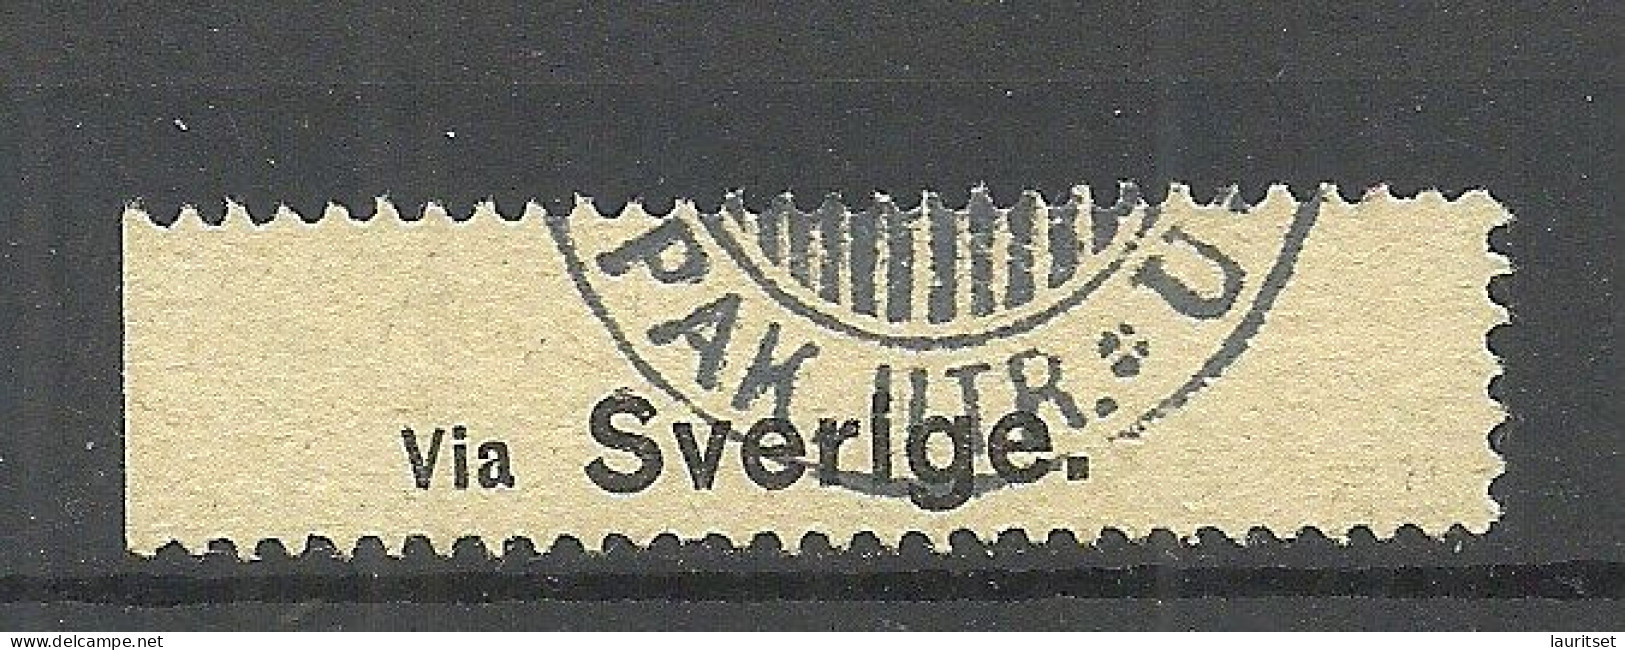 Finland Label Via Sverige (Via Sweden) Durch Schweden O - Cinderellas